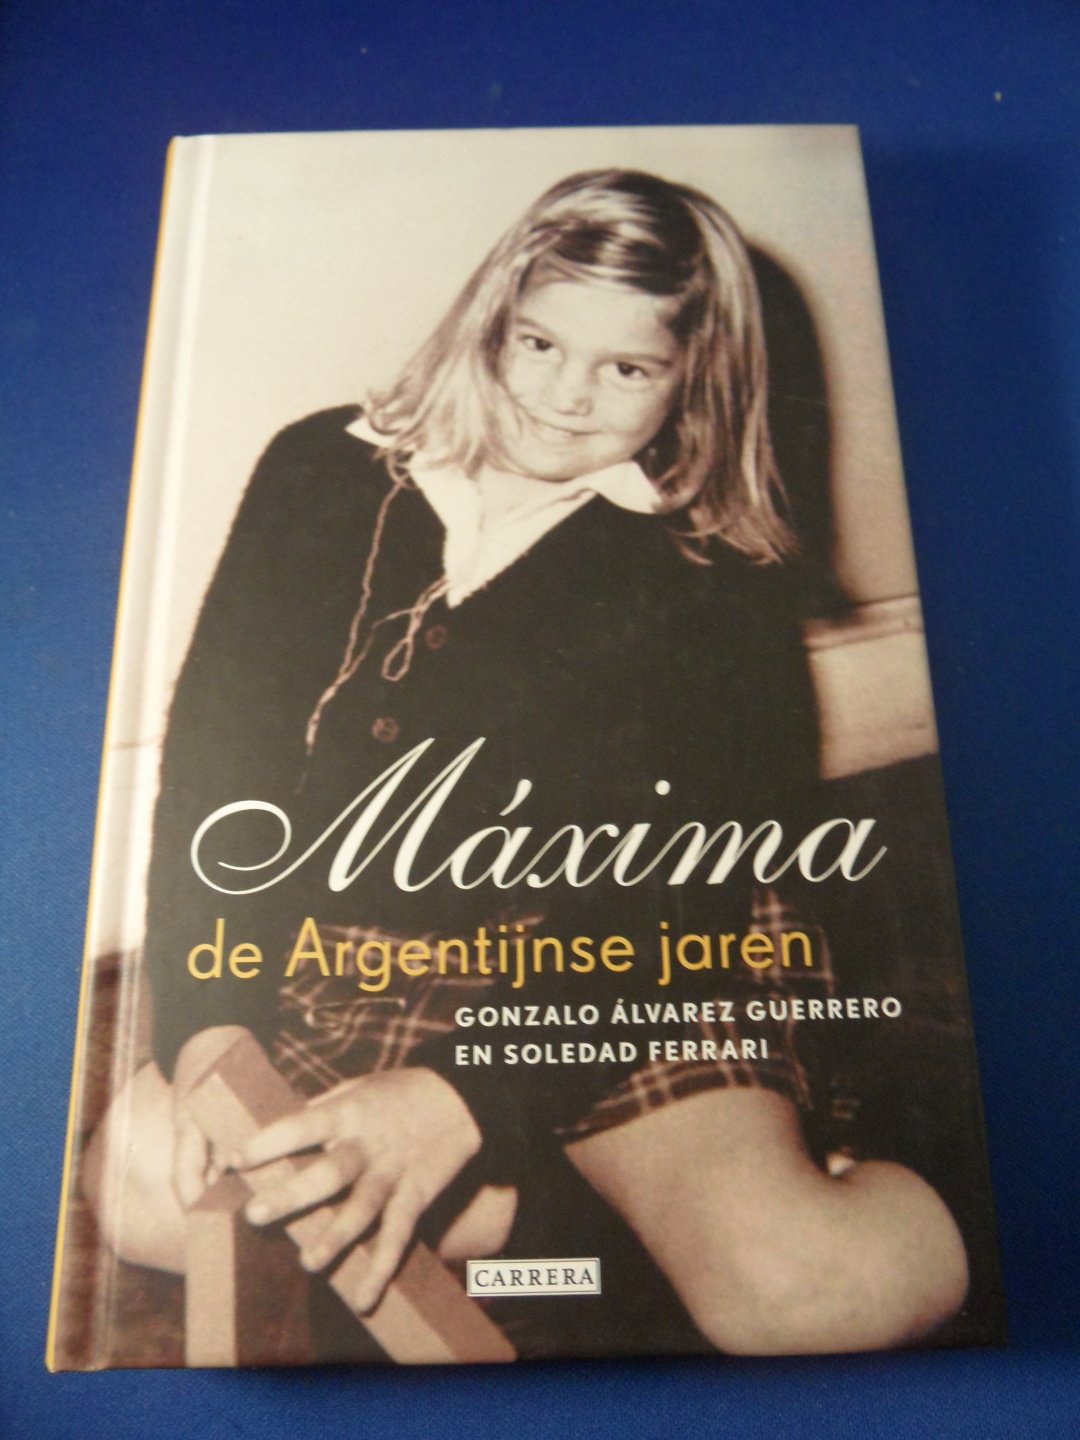 Guerrero, Gonzalo Alvarez en Ferrari, Soledad - Maxima, de Argentijnse jaren